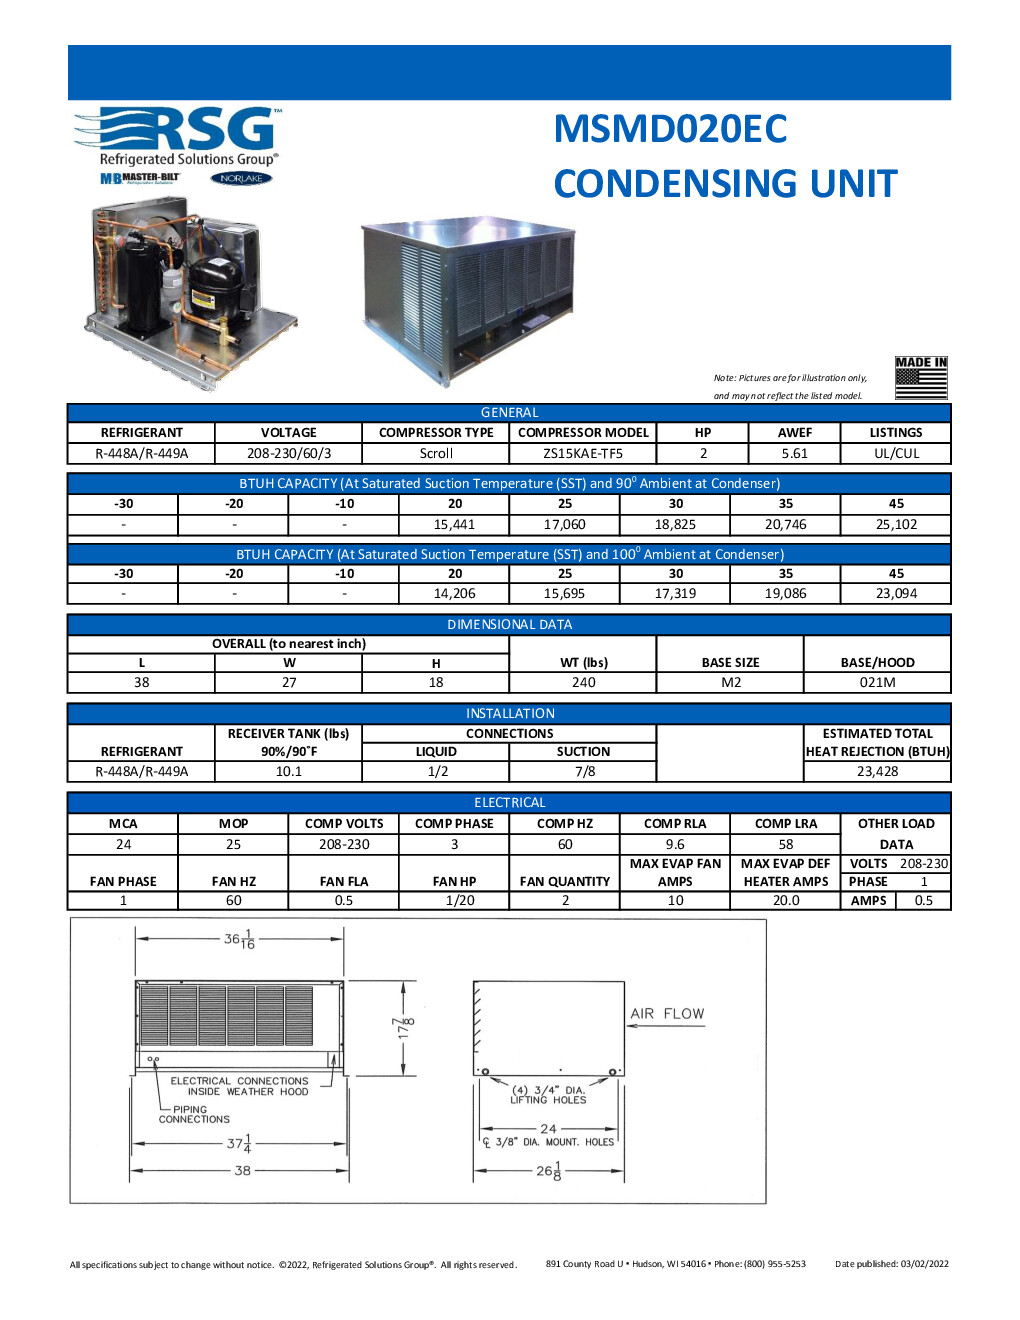 Master-Bilt MSMD020EC Remote Medium Temp Scroll Condensing Unit, 2 HP, 208-230v/60/3-ph